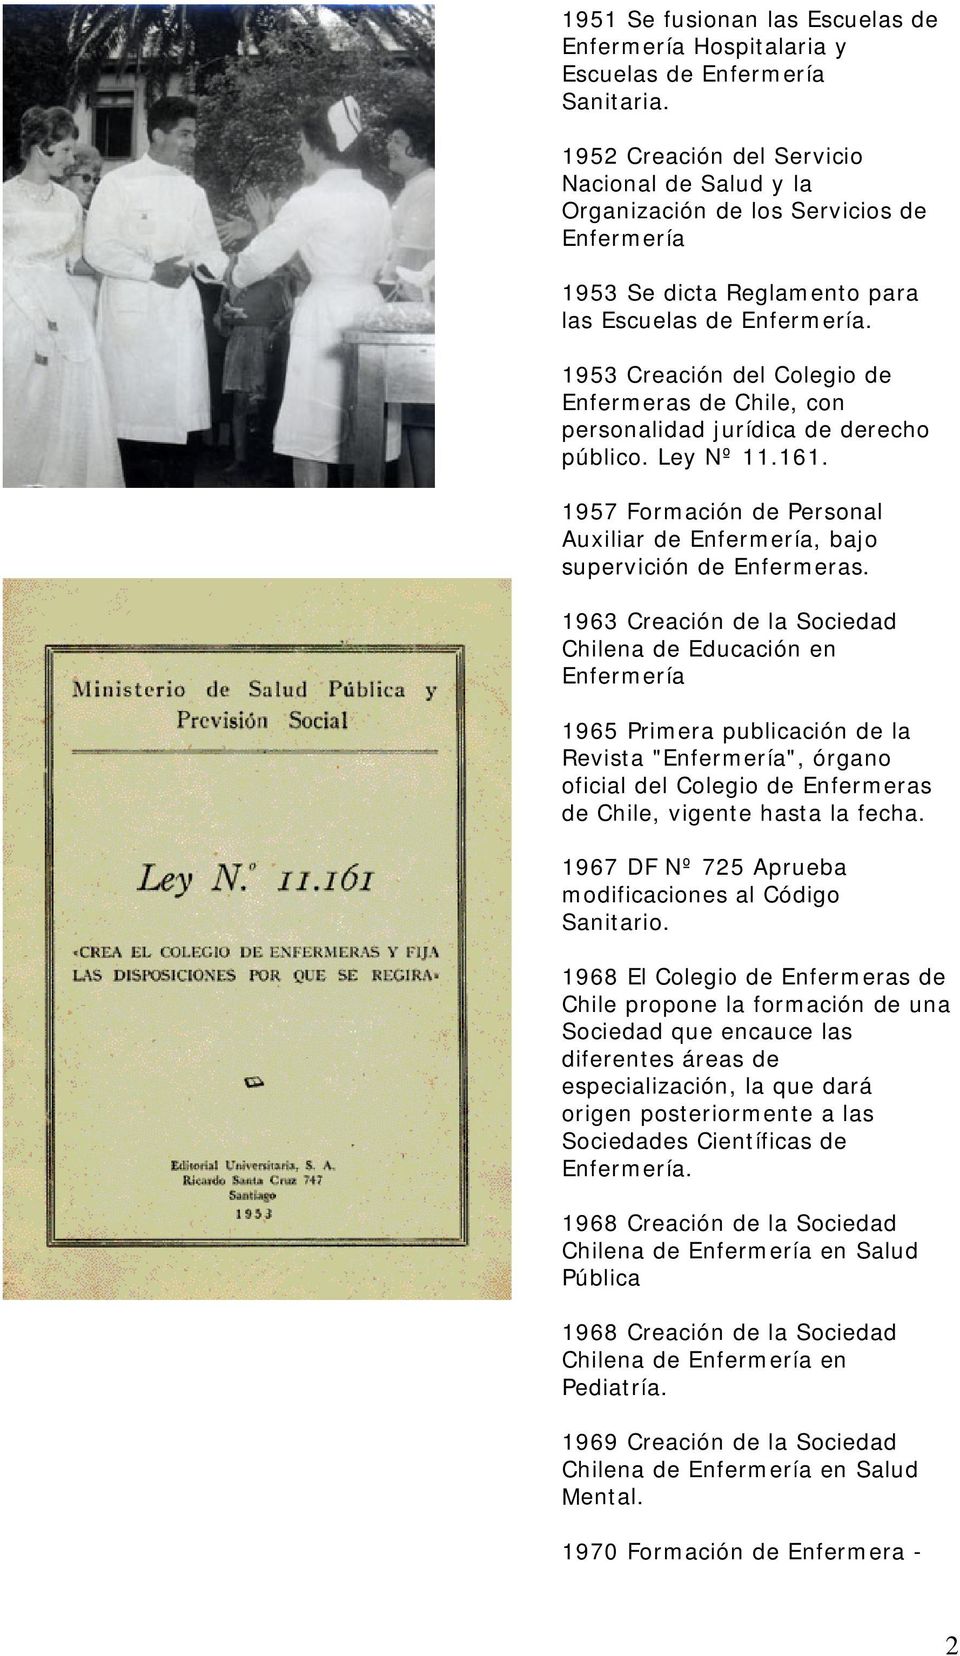 1953 Creación del Colegio de Enfermeras de Chile, con personalidad jurídica de derecho público. Ley Nº 11.161. 1957 Formación de Personal Auxiliar de Enfermería, bajo supervición de Enfermeras.